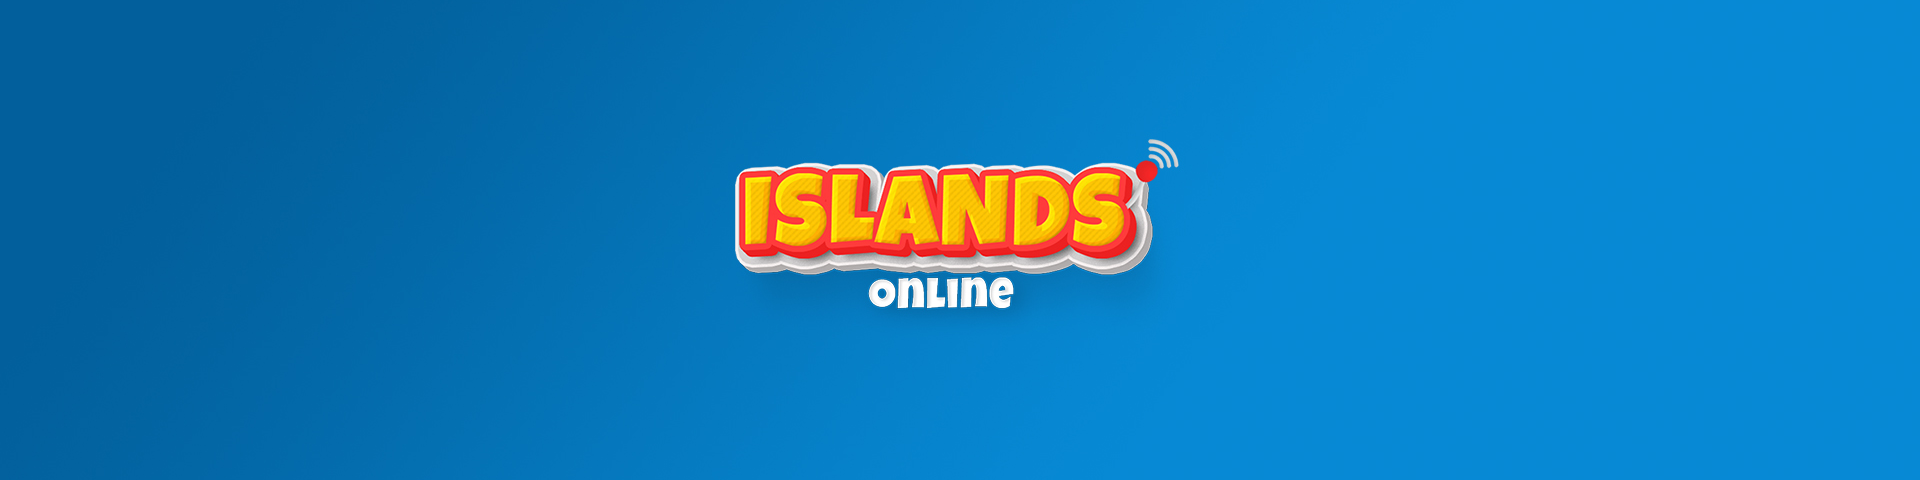 Islands Online 1.0